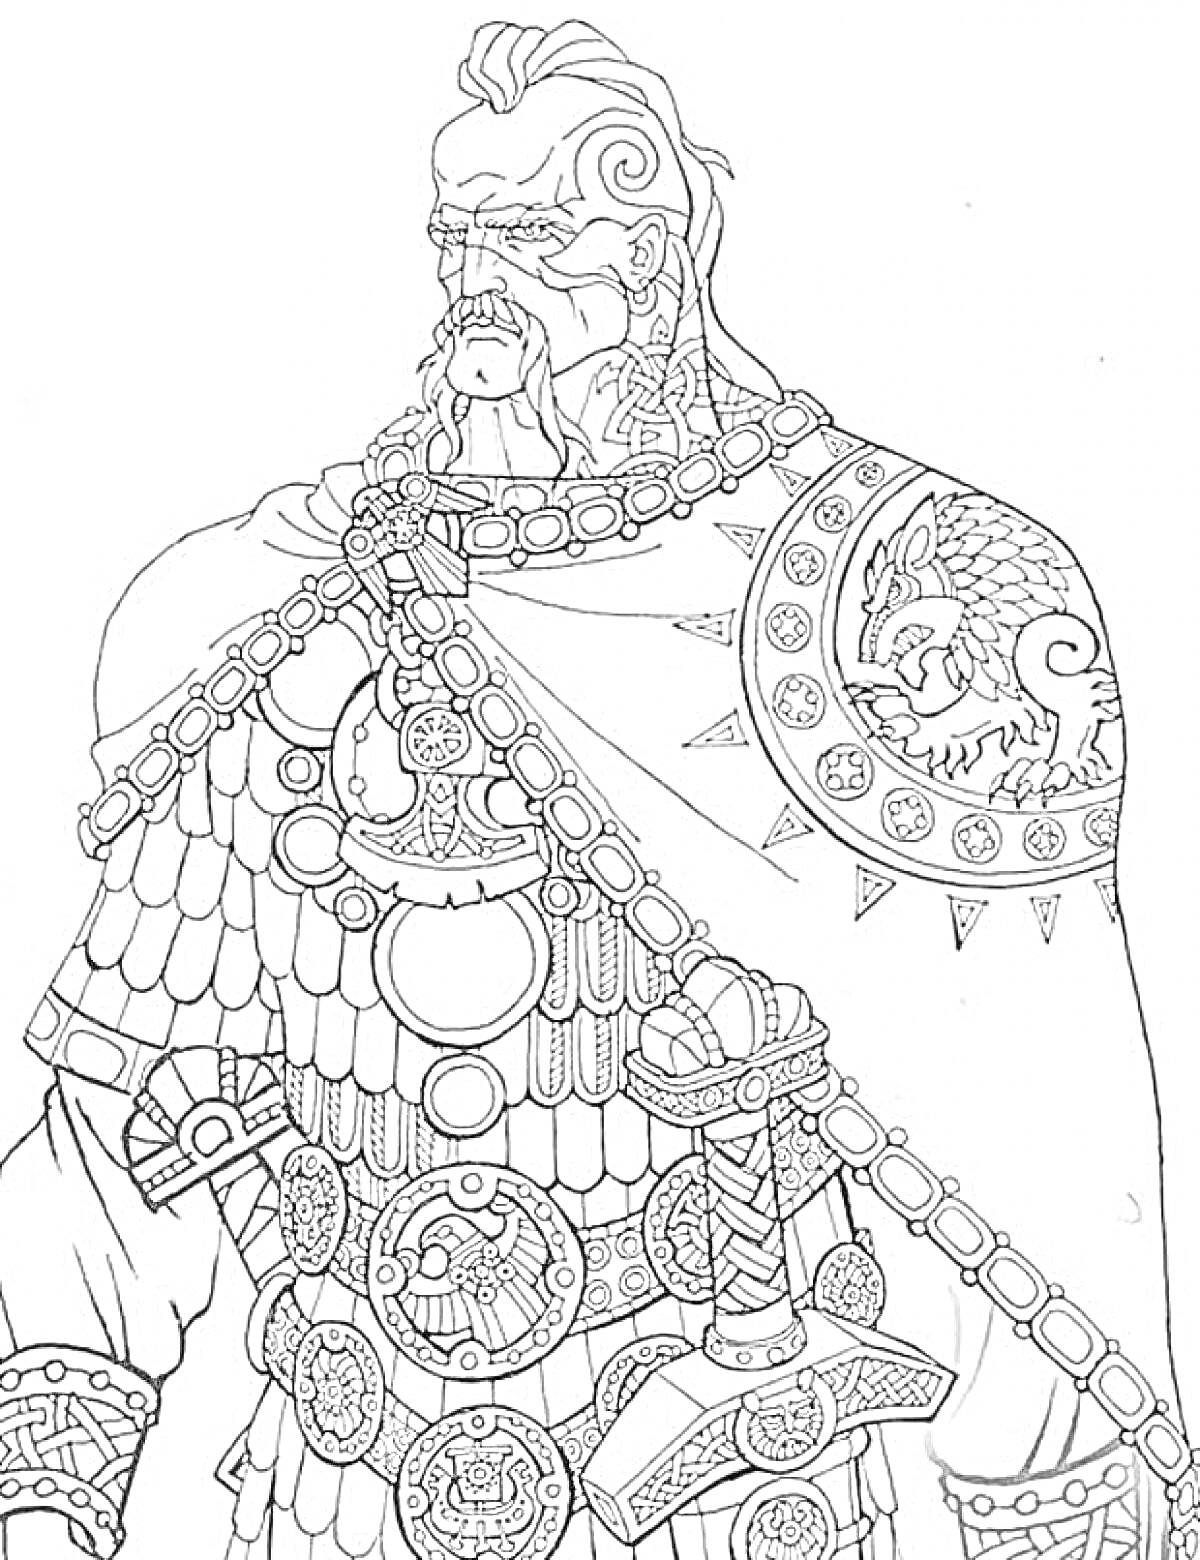 Раскраска Викинг с бородой и мечом, украшенный медальонами и меховой накидкой